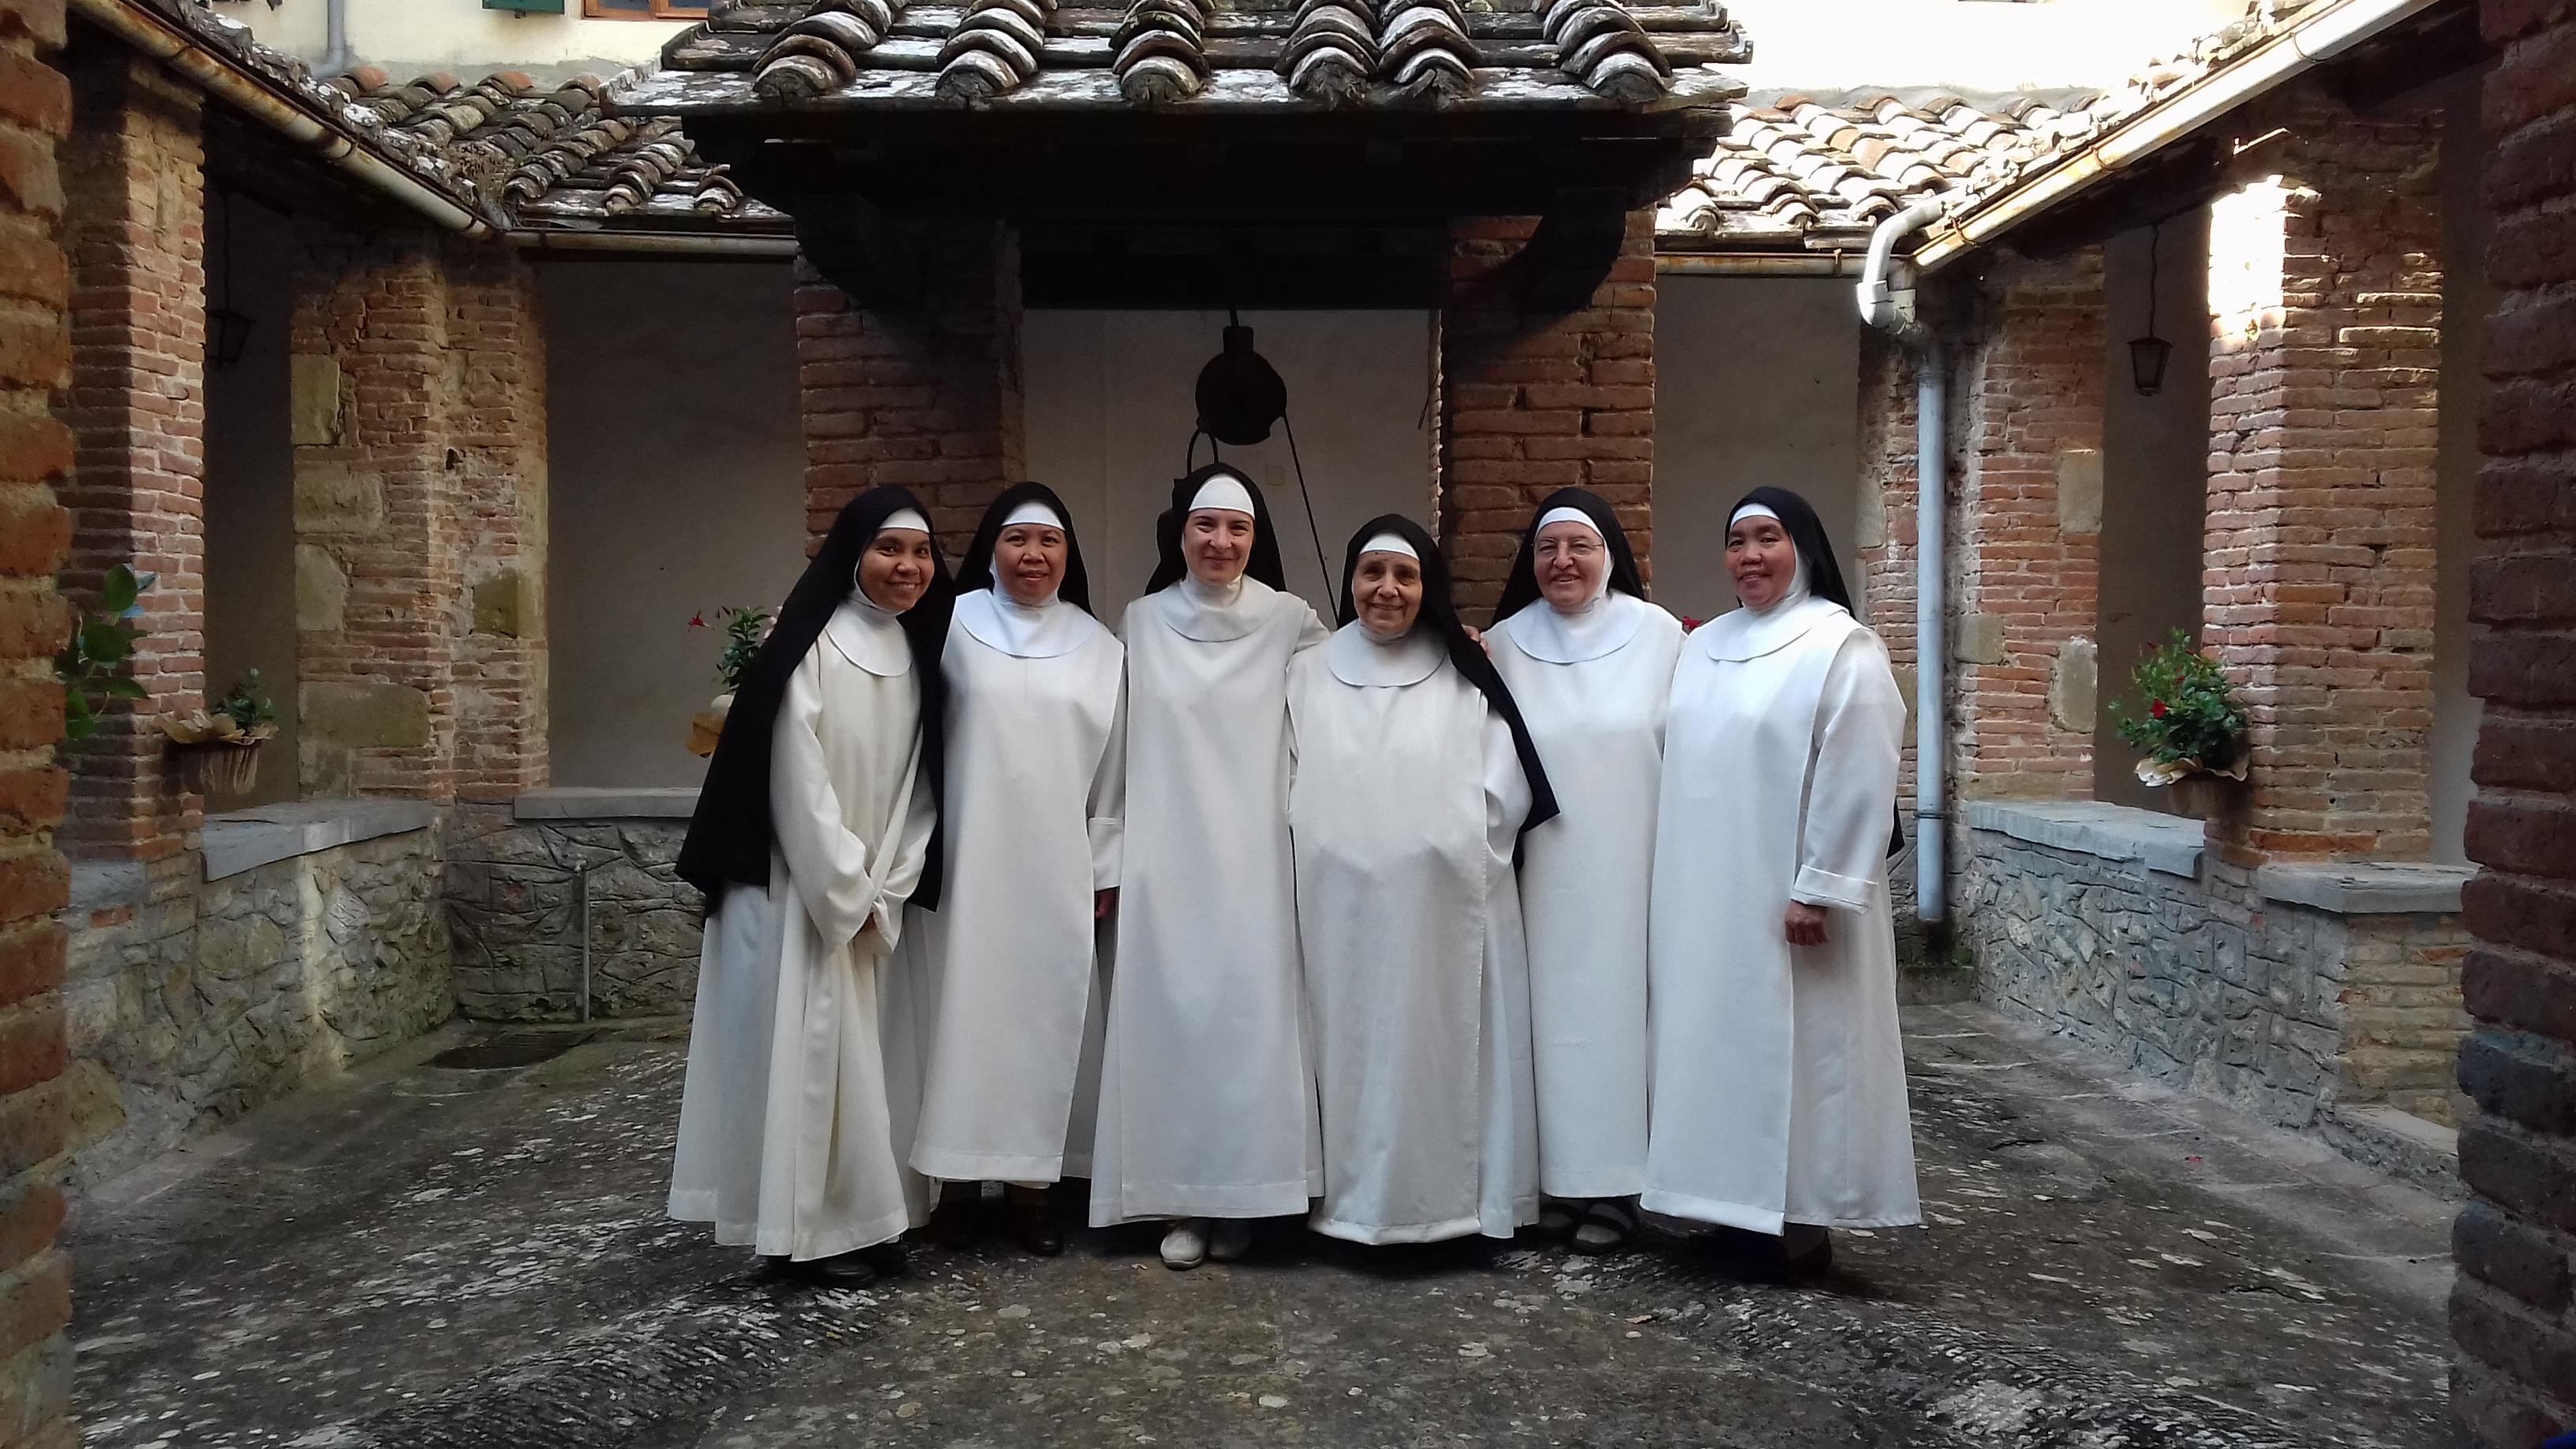 Maria Teresa Saccente, la madre superiora, tercera por la izquierda. Monasterio de los Padres Capuchinos